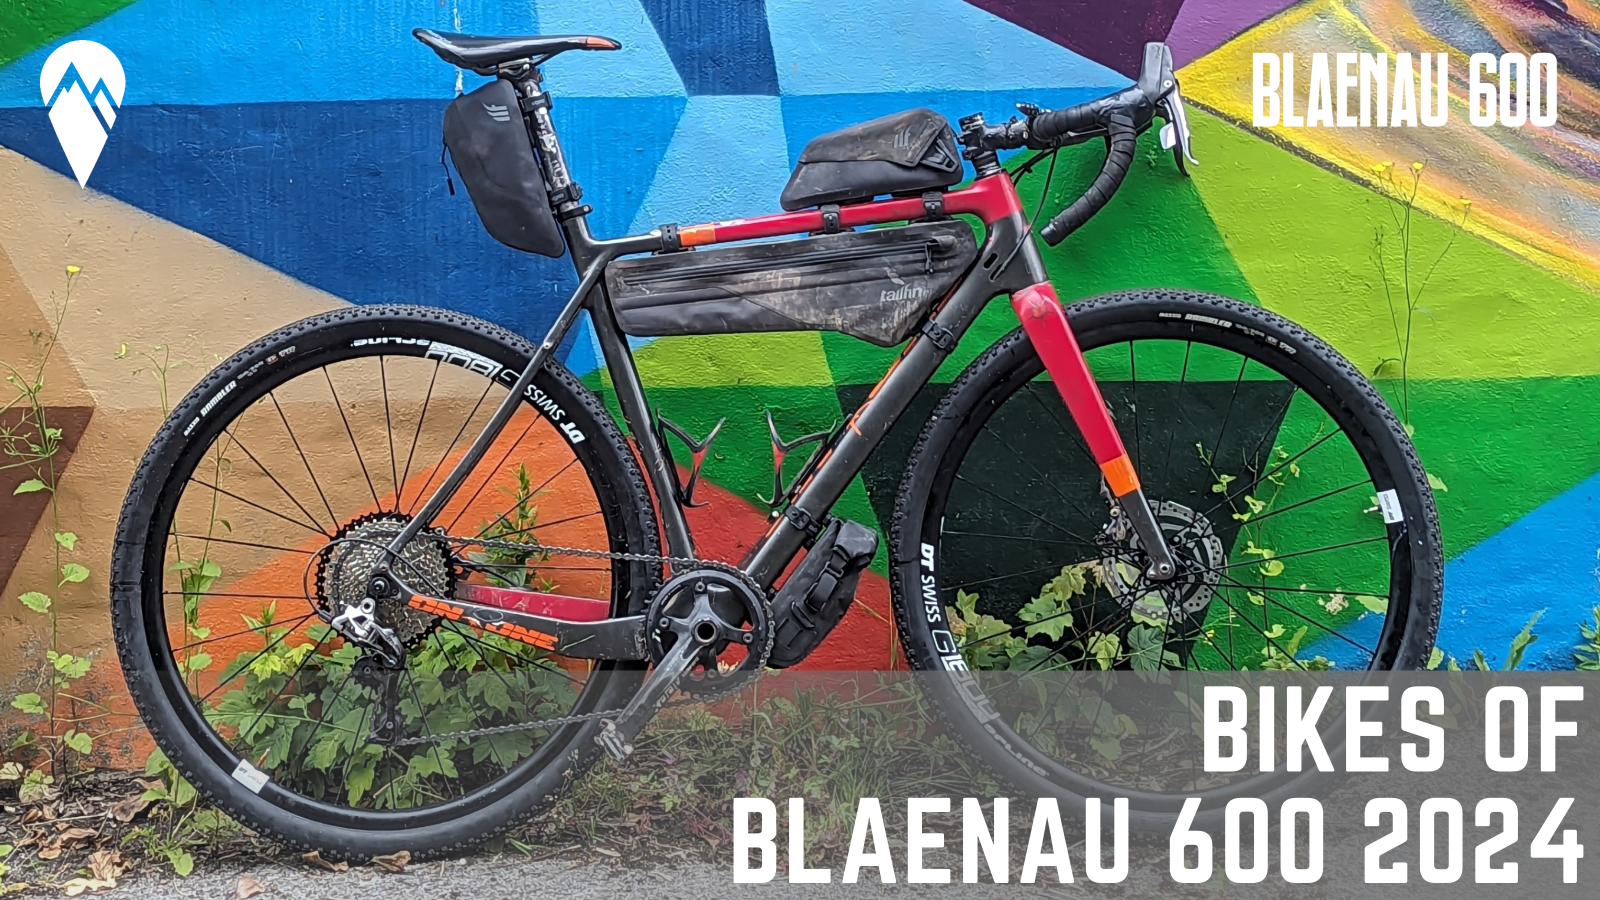 Bikes of Blaenau 600 2024